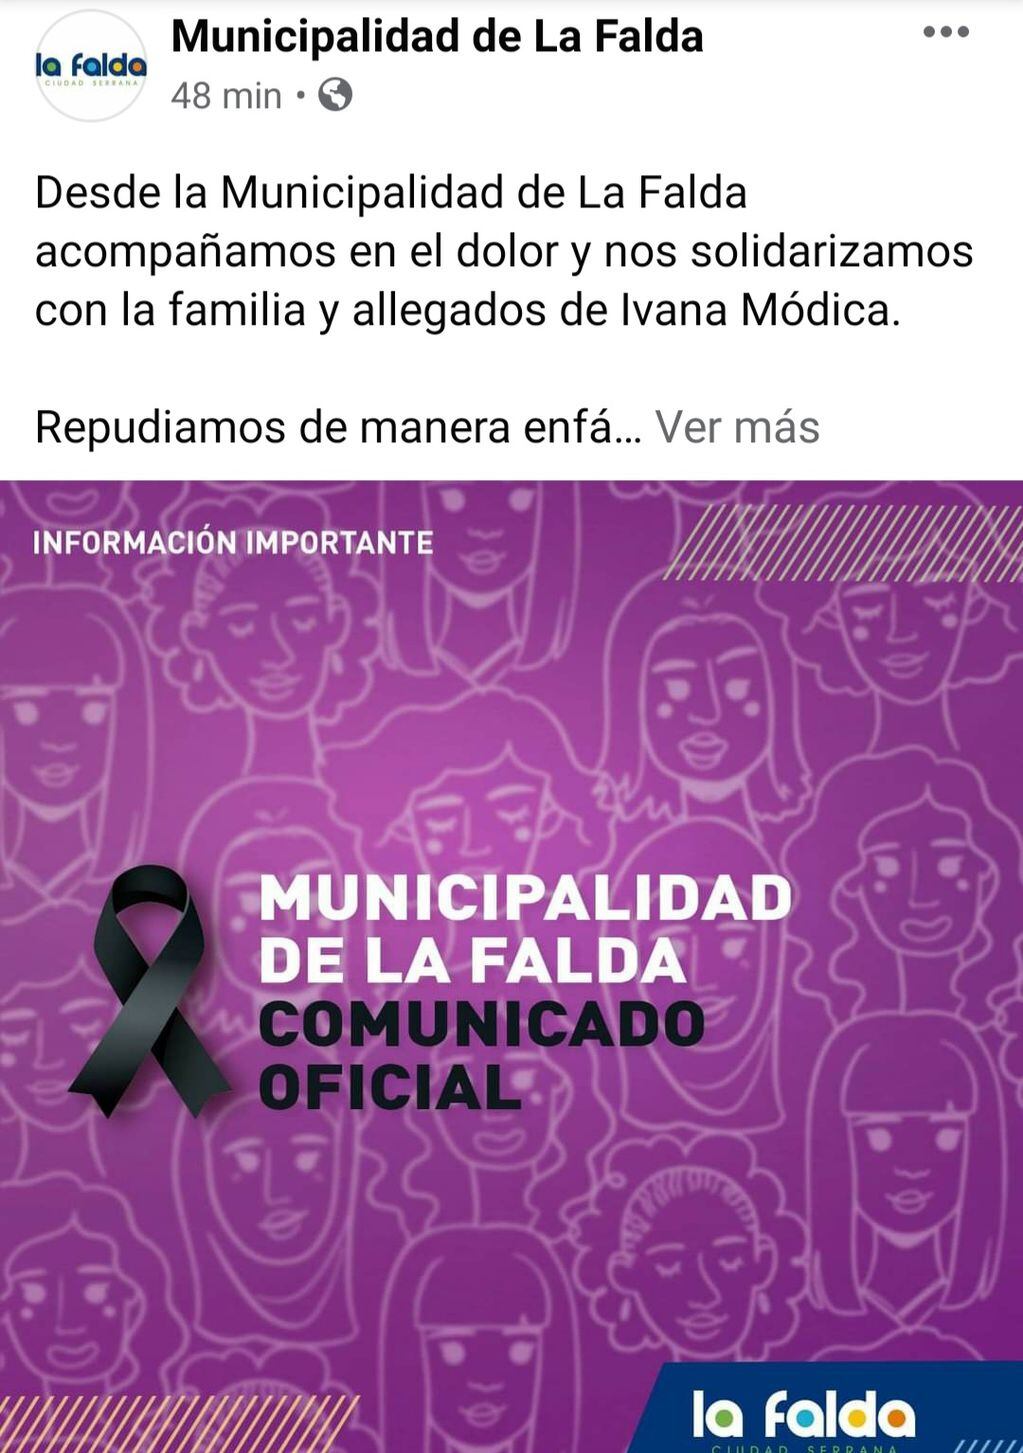 Comunicado oficial de la Municipalidad de La Falda por el femicidio de Ivana Módica.